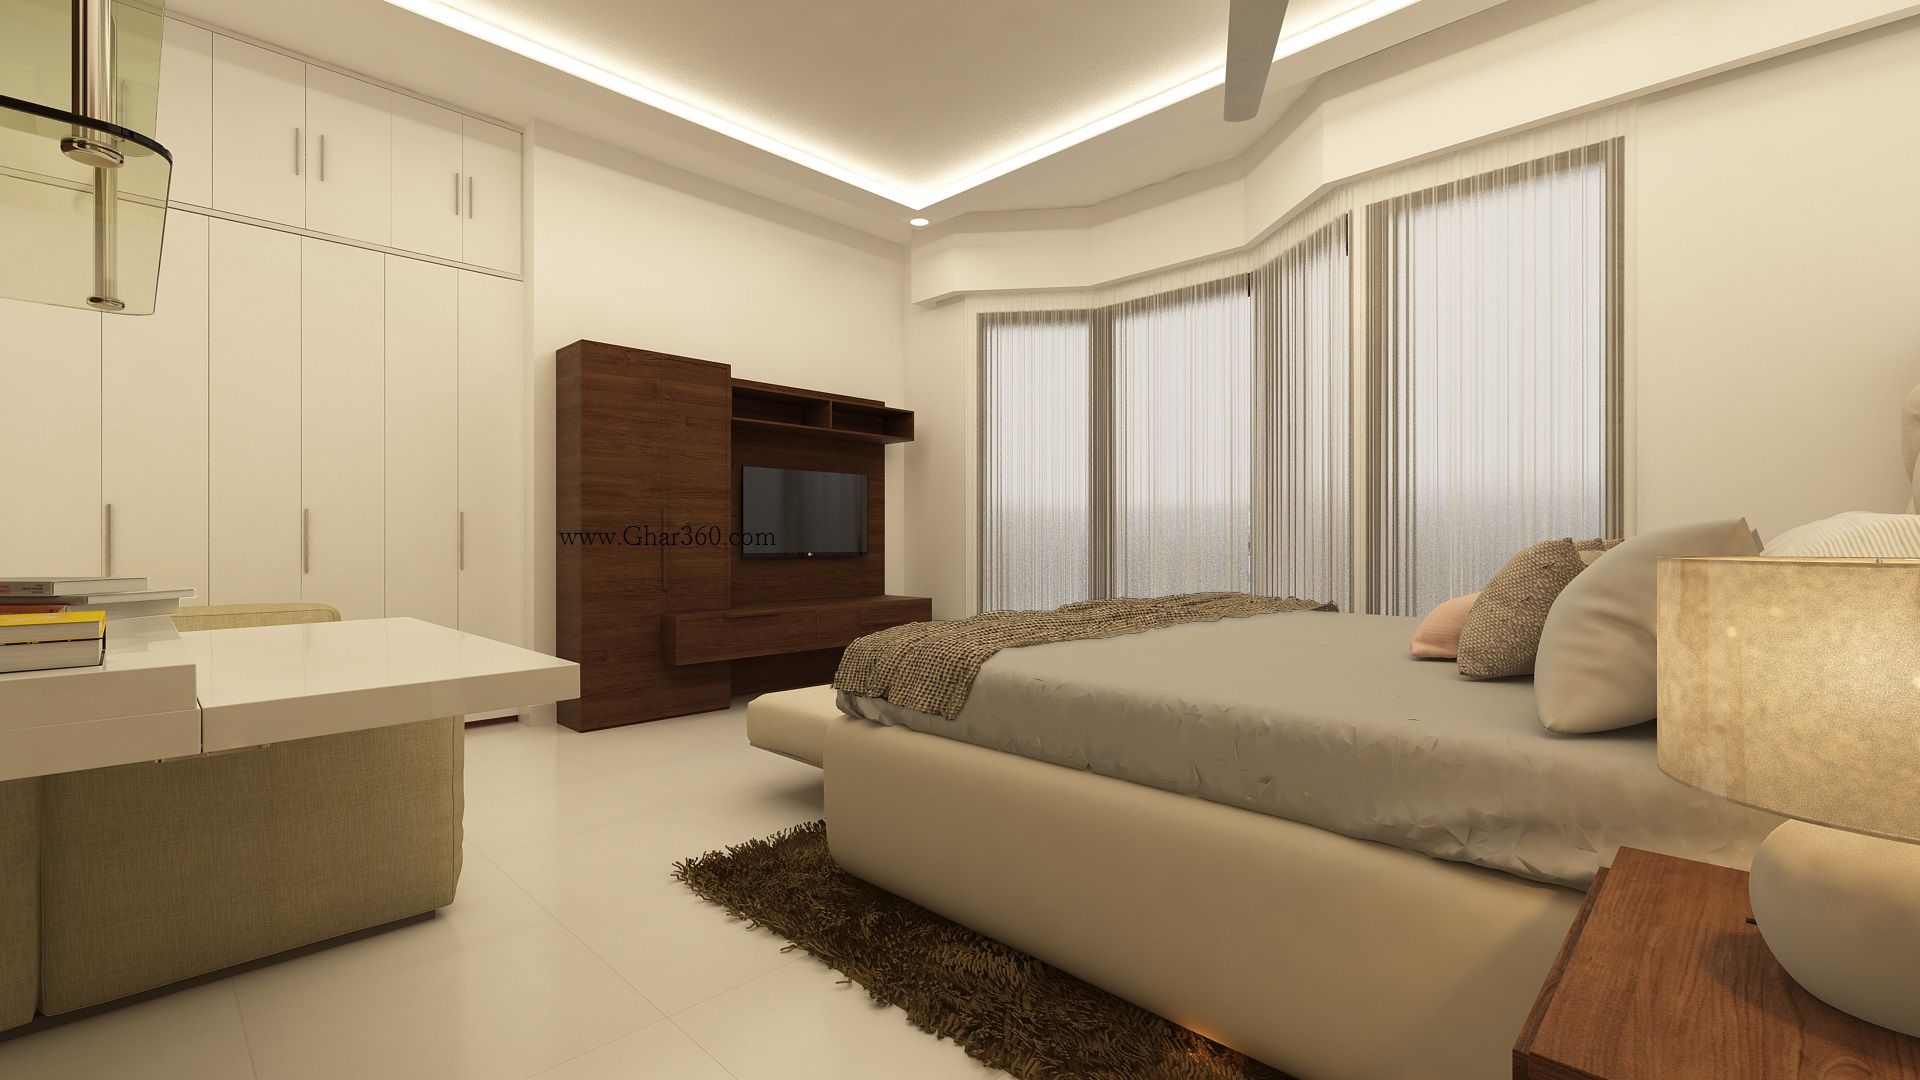 Master Bedroom TV Unit Ghar360 bedroom,tv unit